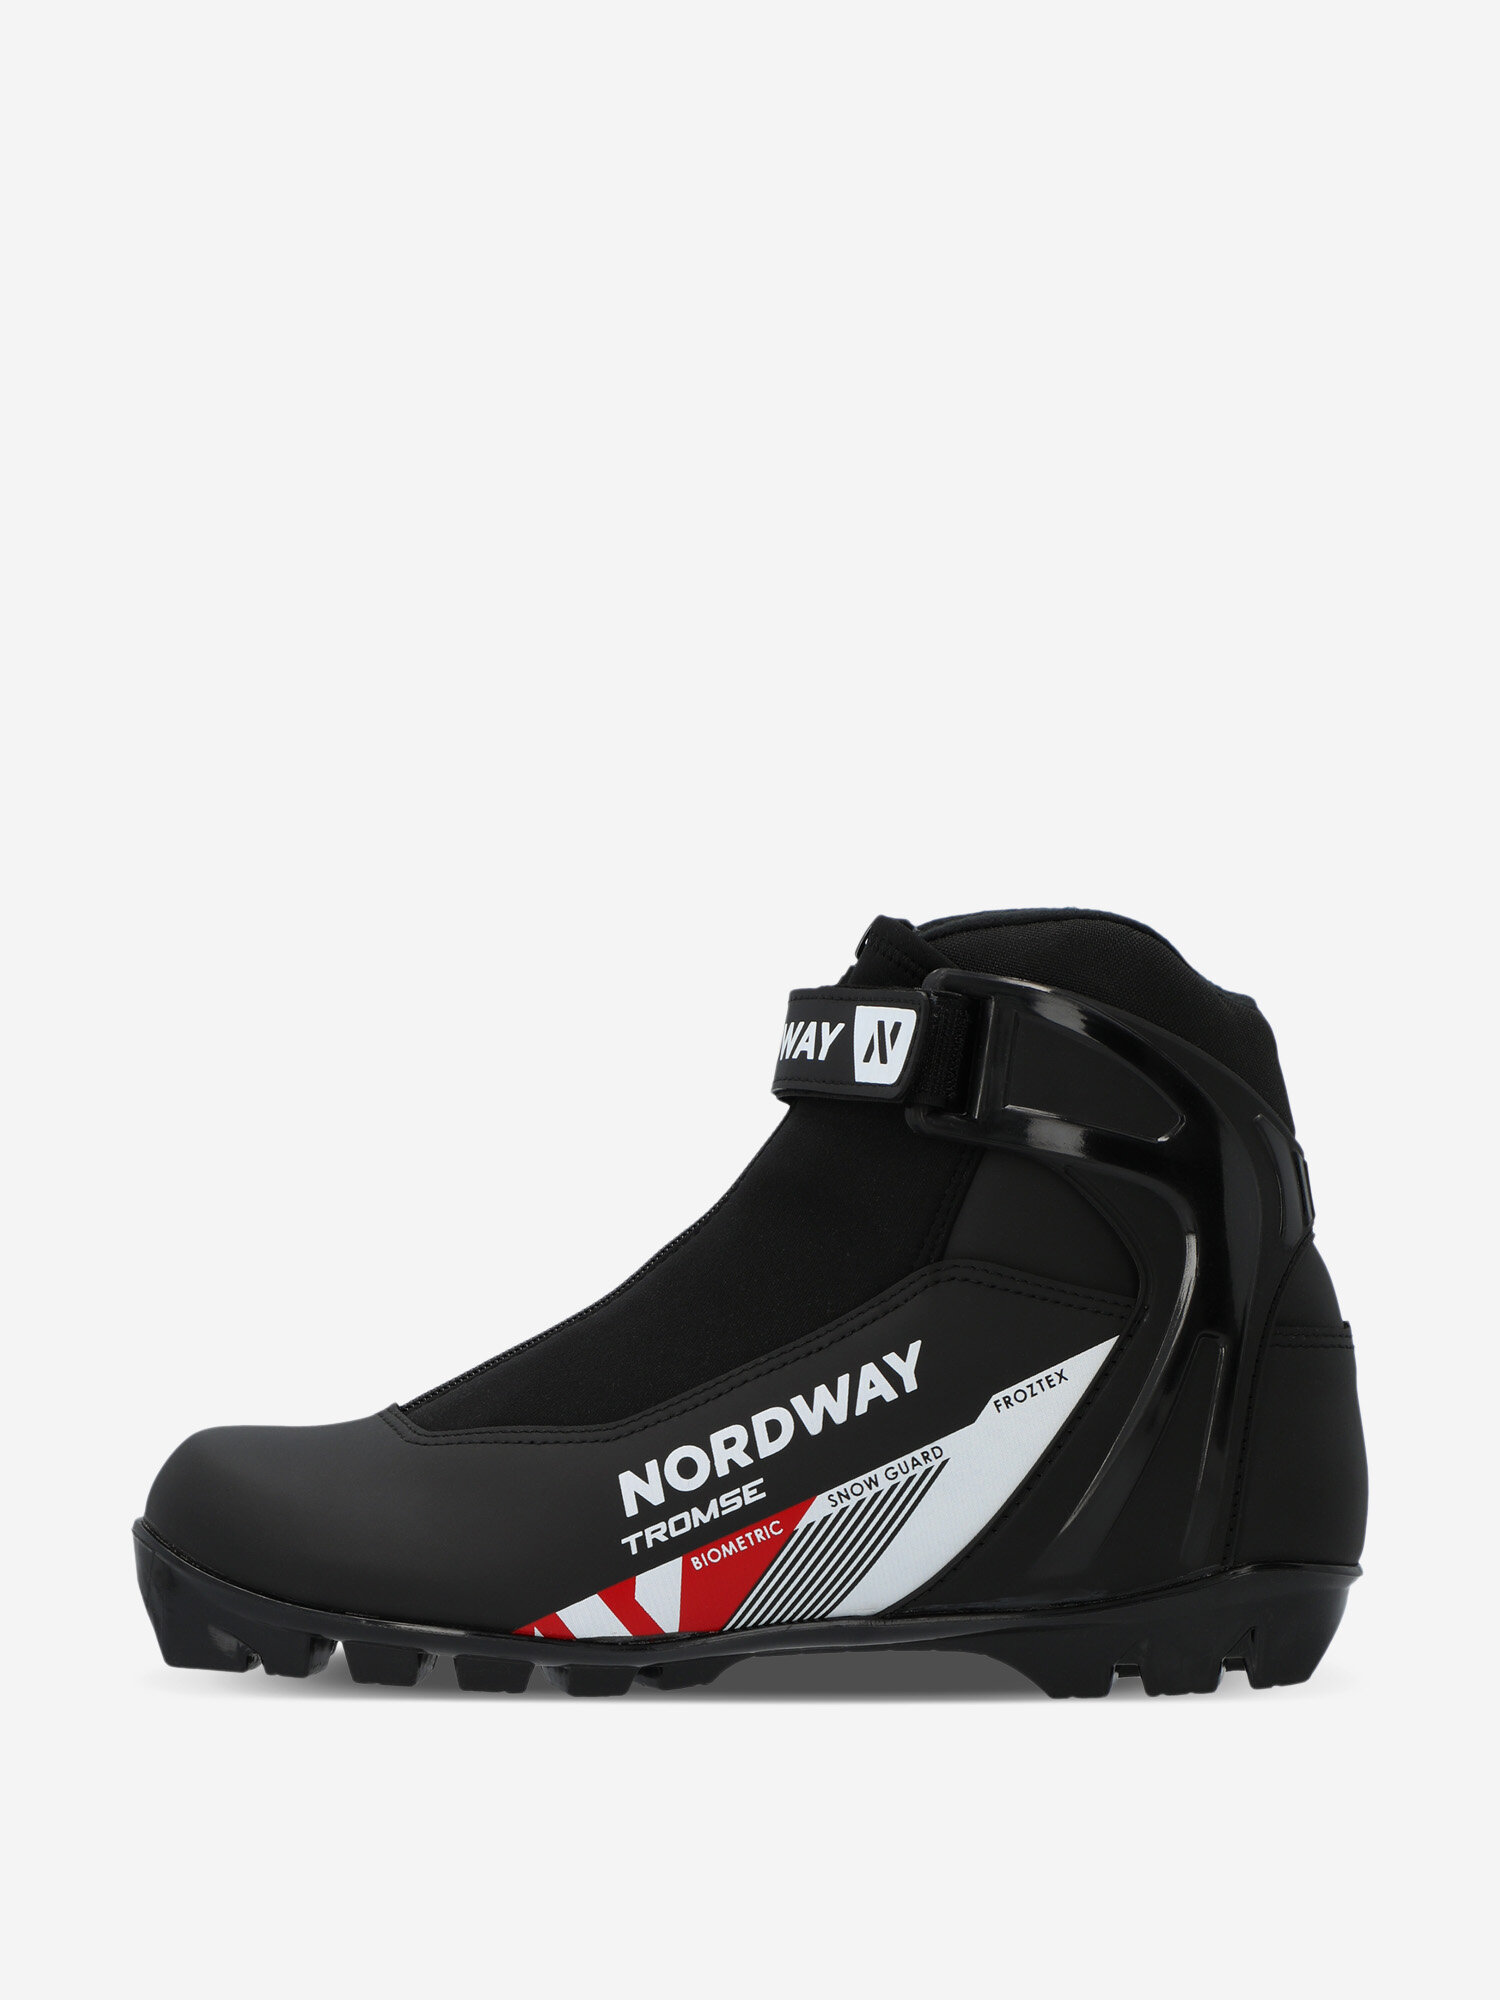 Ботинки для беговых лыж Nordway Tromse NNN Черный; RUS: 43, Ориг: 44